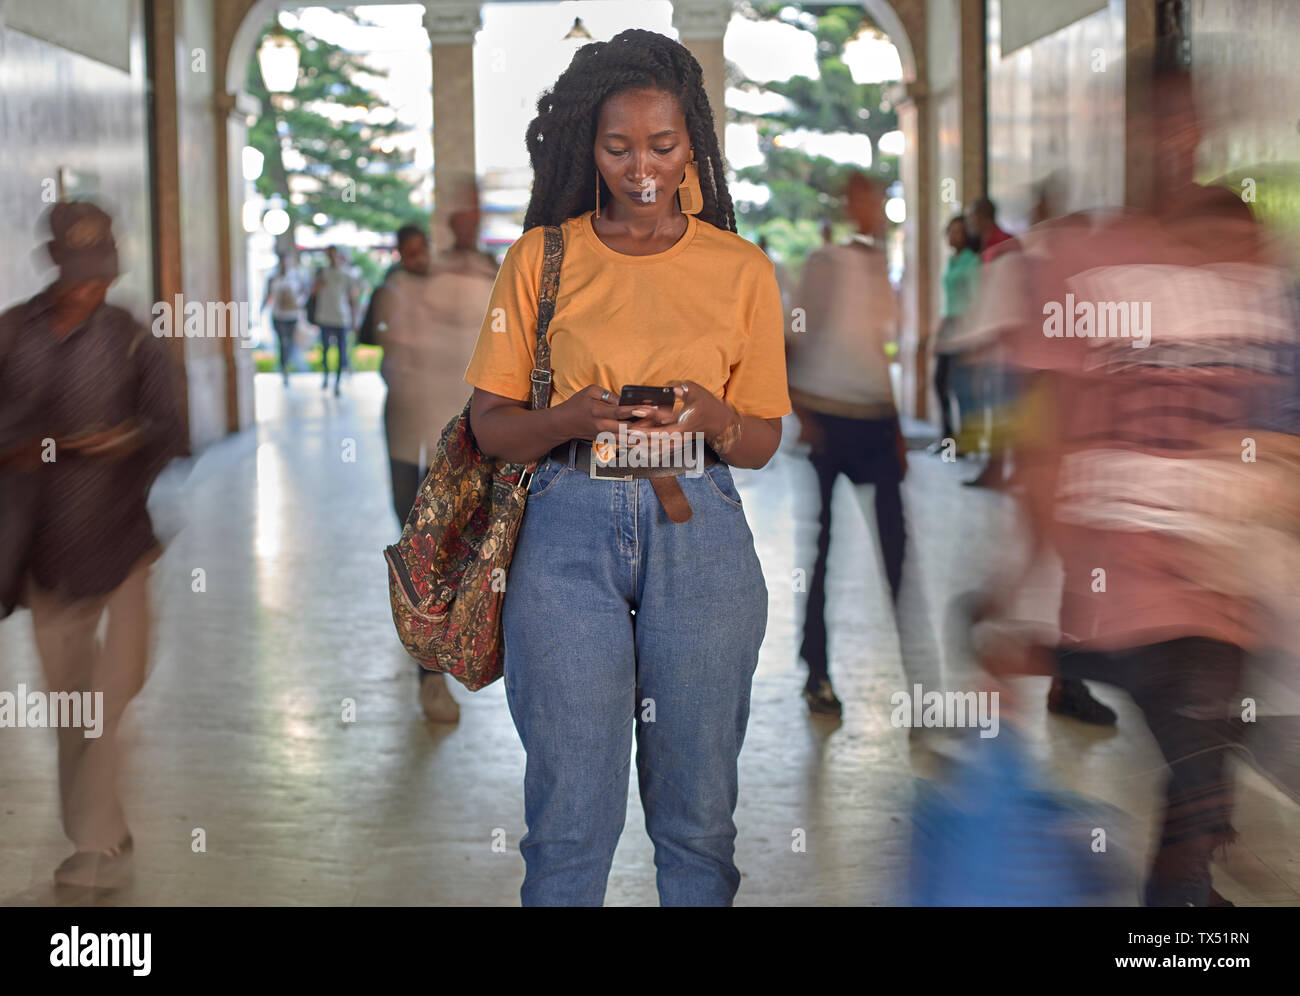 Junge Frau am Bahnhof ihr Telefon prüfen, während die Leute vorbei Stockfoto